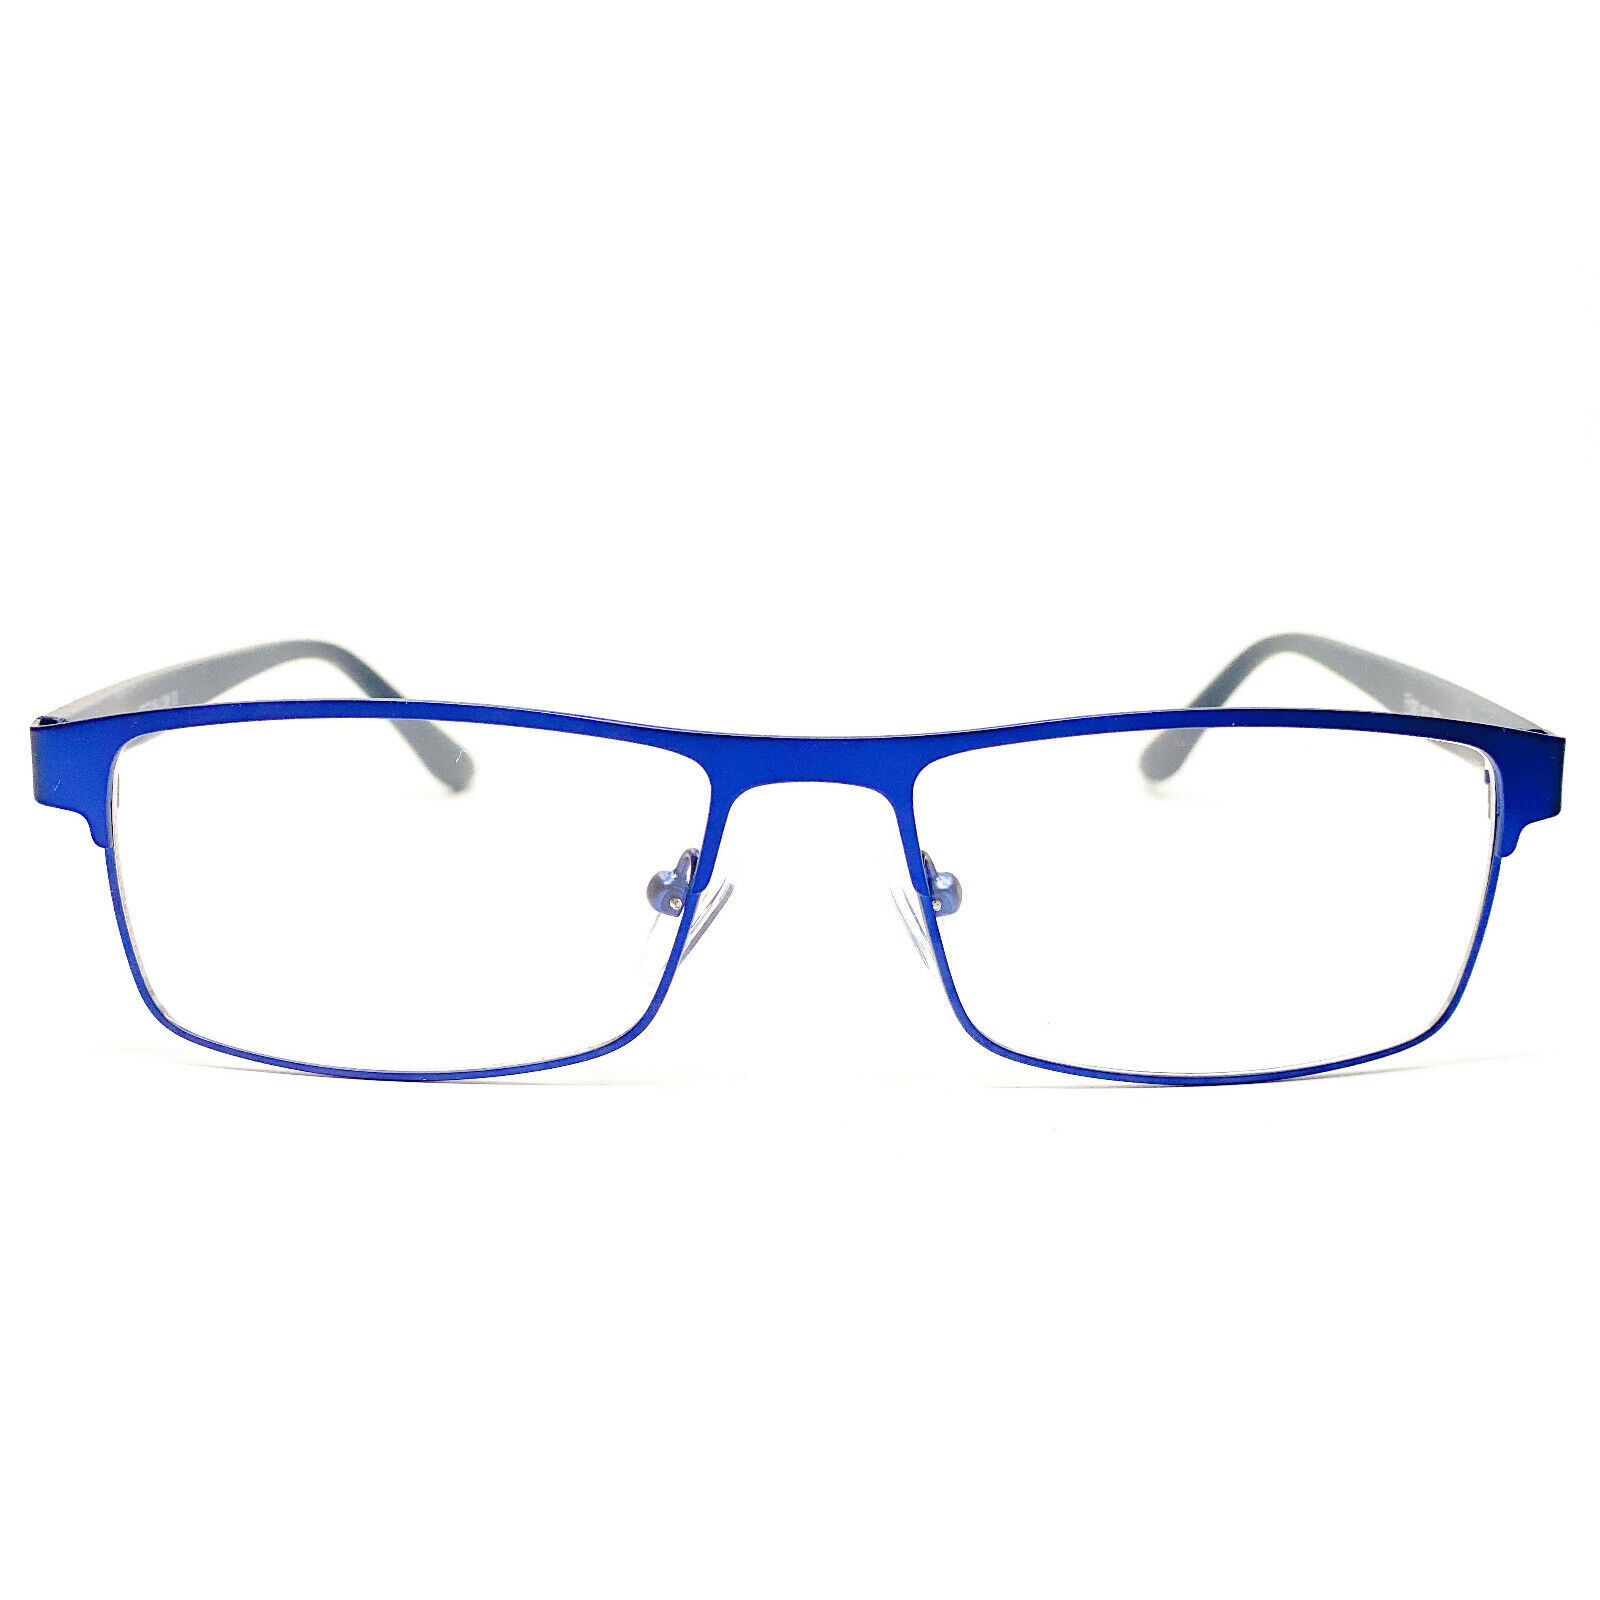 1 Herren Brille Lesebrille blau Metall 1,0 bis 5,0 OPTIKERFACHGESCHÄFT Neu